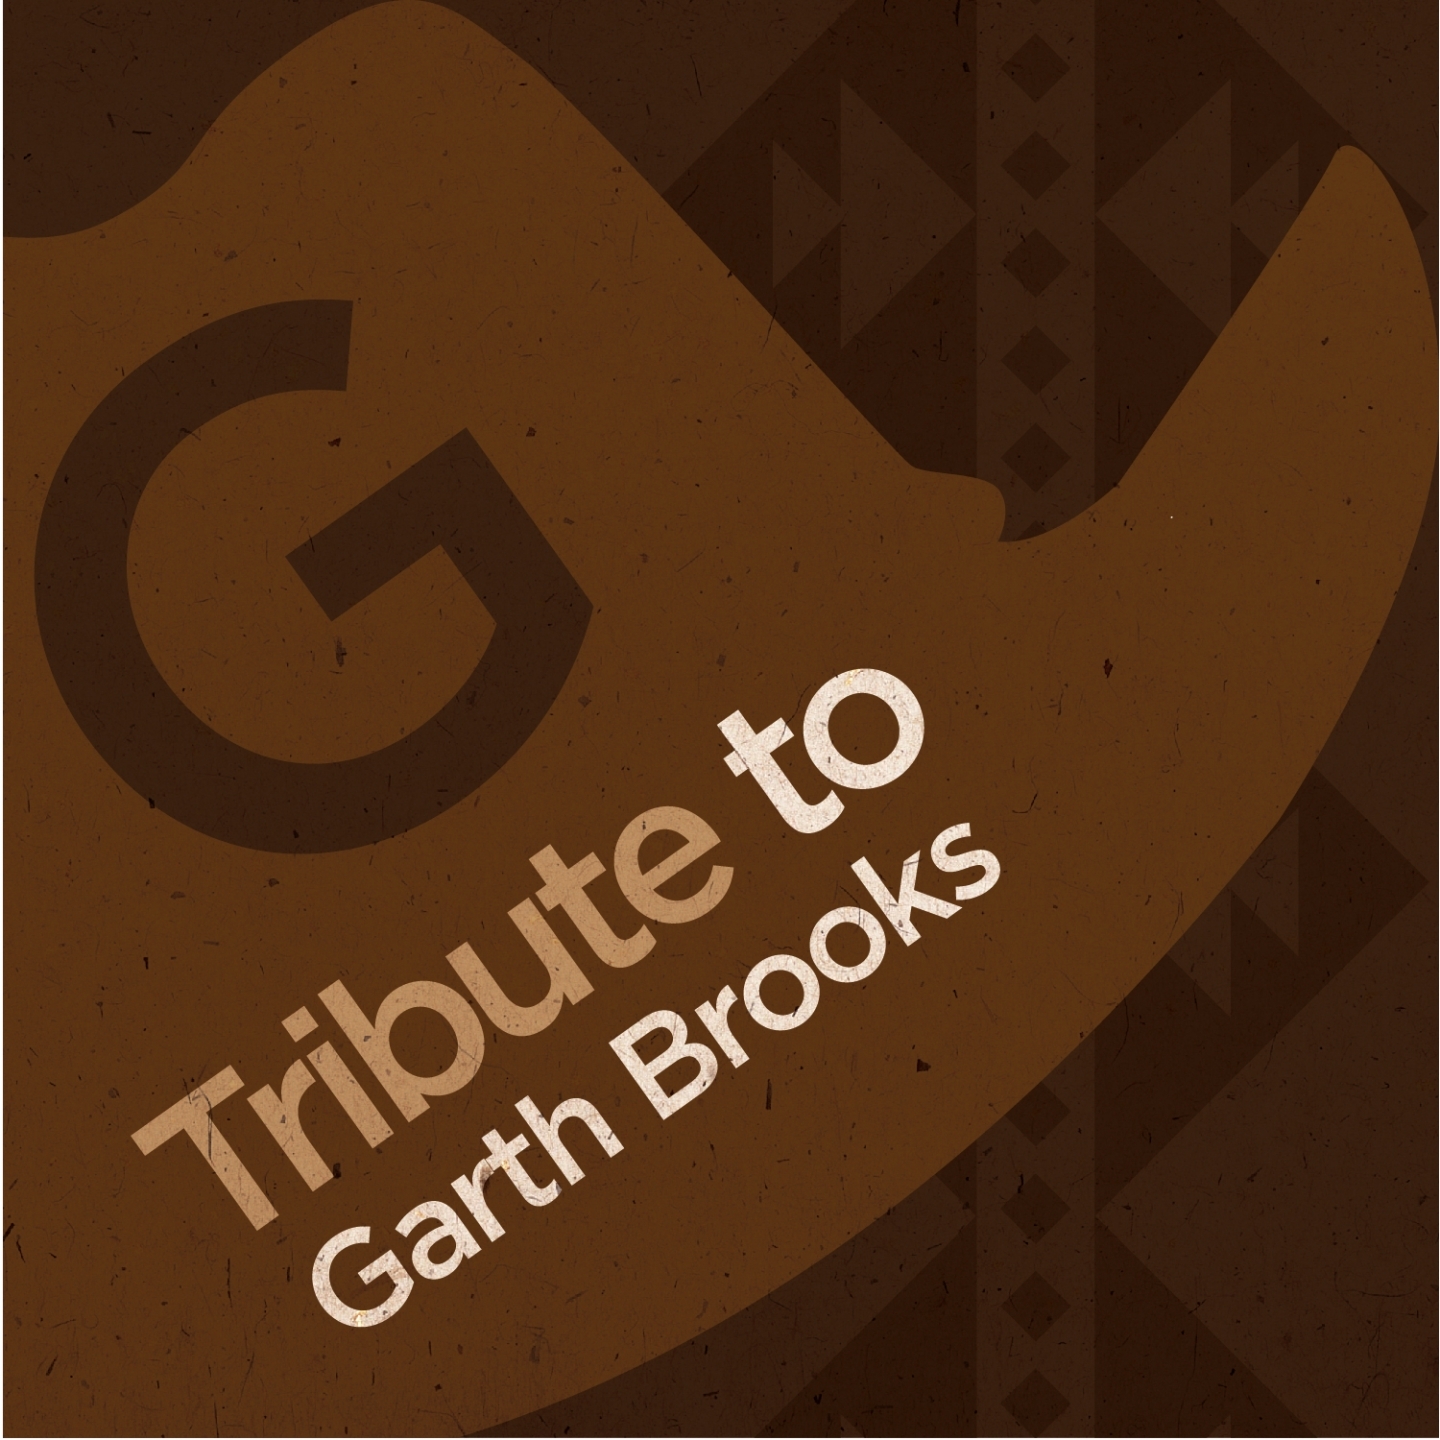 Tribute to Garth Brooks